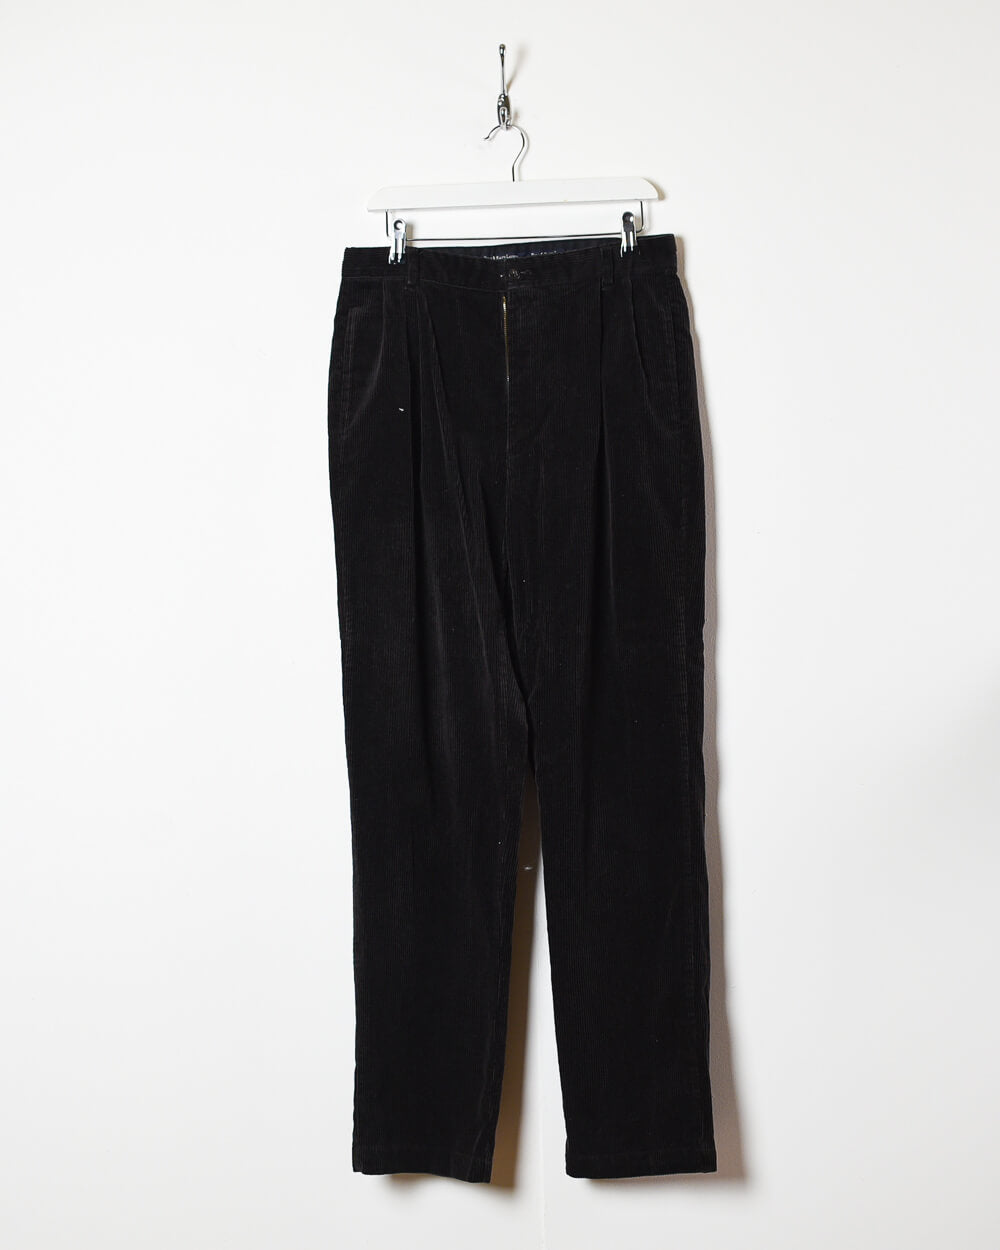 Black Ralph Lauren Polo Corduroy Trousers - W32 L34